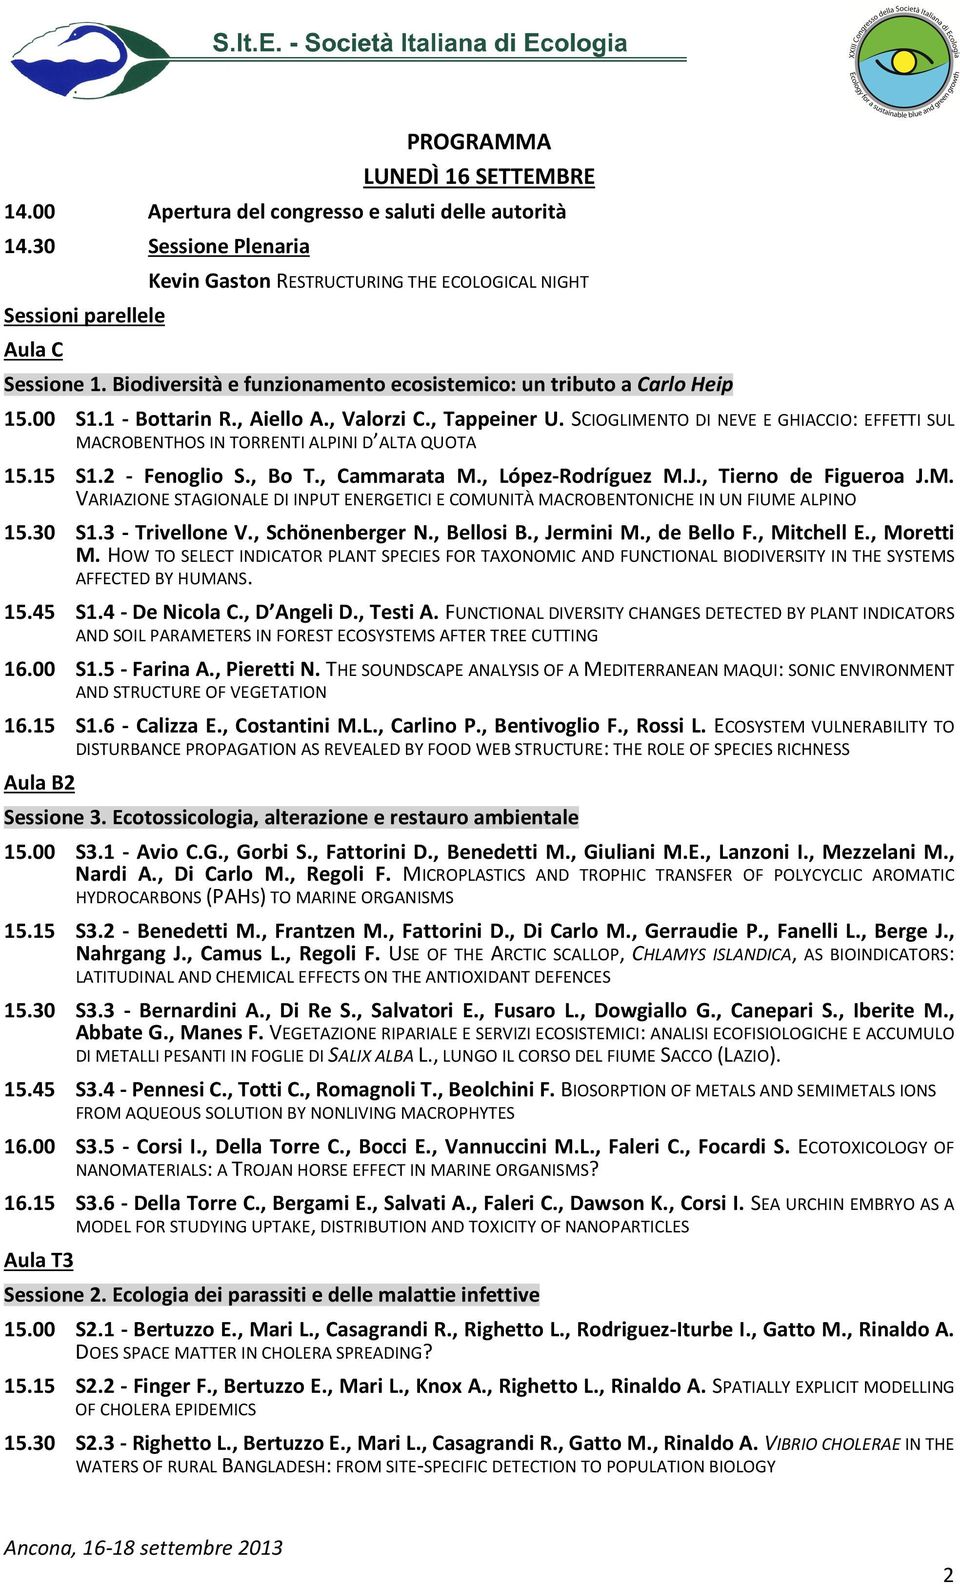 SCIOGLIMENTO DI NEVE E GHIACCIO: EFFETTI SUL MACROBENTHOS IN TORRENTI ALPINI D ALTA QUOTA 15.15 S1.2 - Fenoglio S., Bo T., Cammarata M., López-Rodríguez M.J., Tierno de Figueroa J.M. VARIAZIONE STAGIONALE DI INPUT ENERGETICI E COMUNITÀ MACROBENTONICHE IN UN FIUME ALPINO 15.